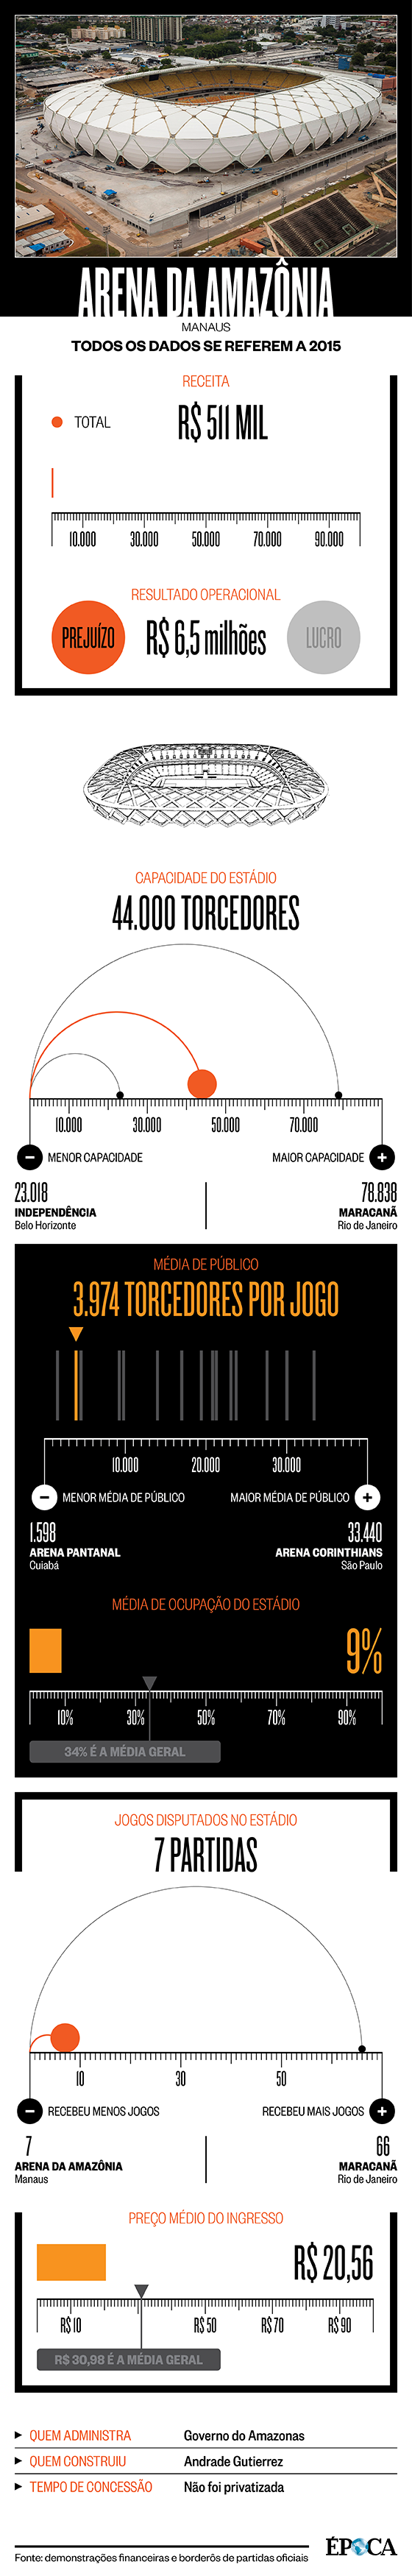 Infográfico da Arena da Amazônia (Foto: Arte ÉPOCA)